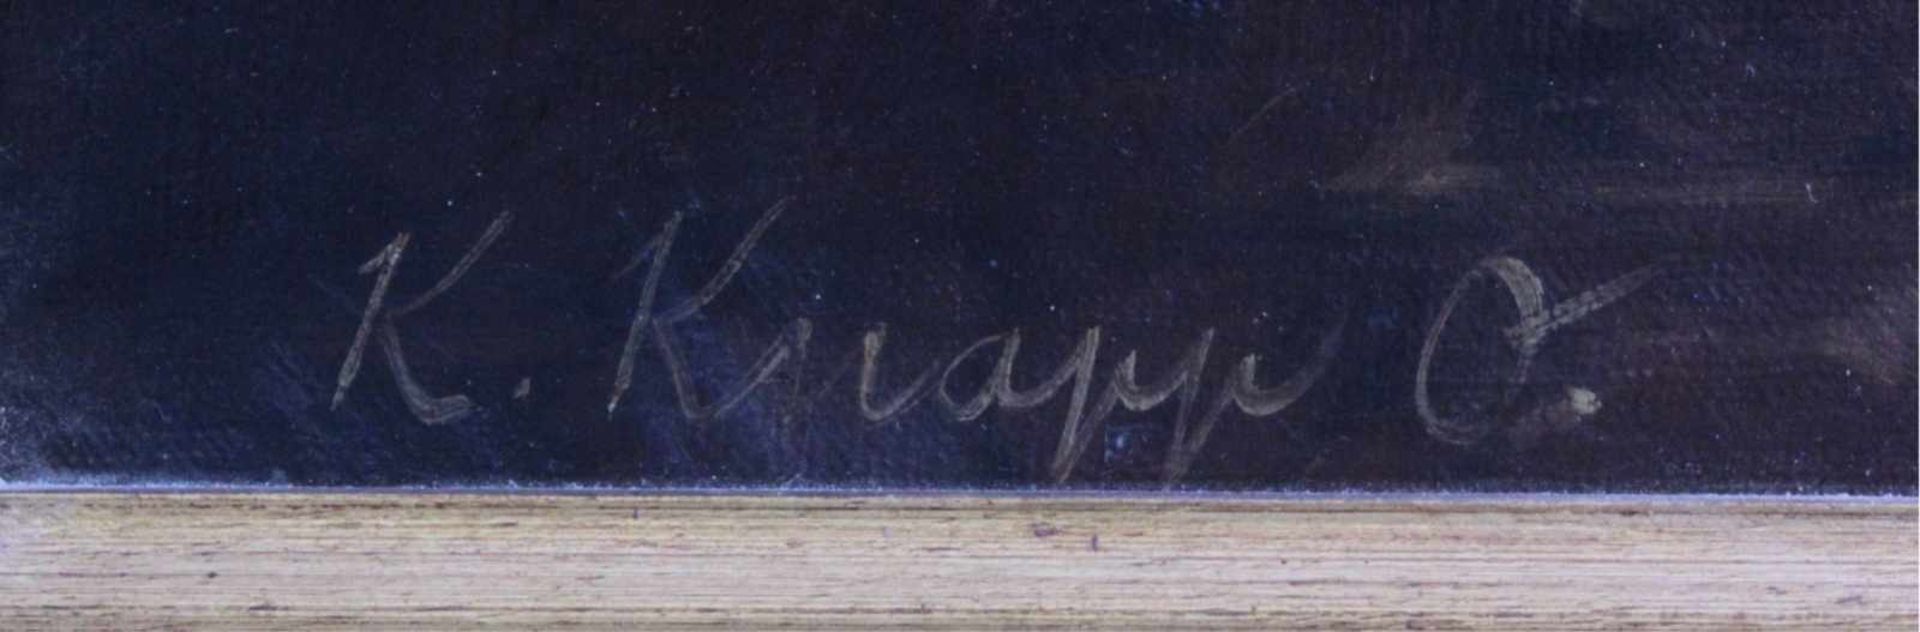 Stillleben mit Obst, 19. Jh., Konrad Knapp 1864-?Öl auf Leinwand gemalt, gerahmt, ca. 492 x 58 cm. - Bild 3 aus 5